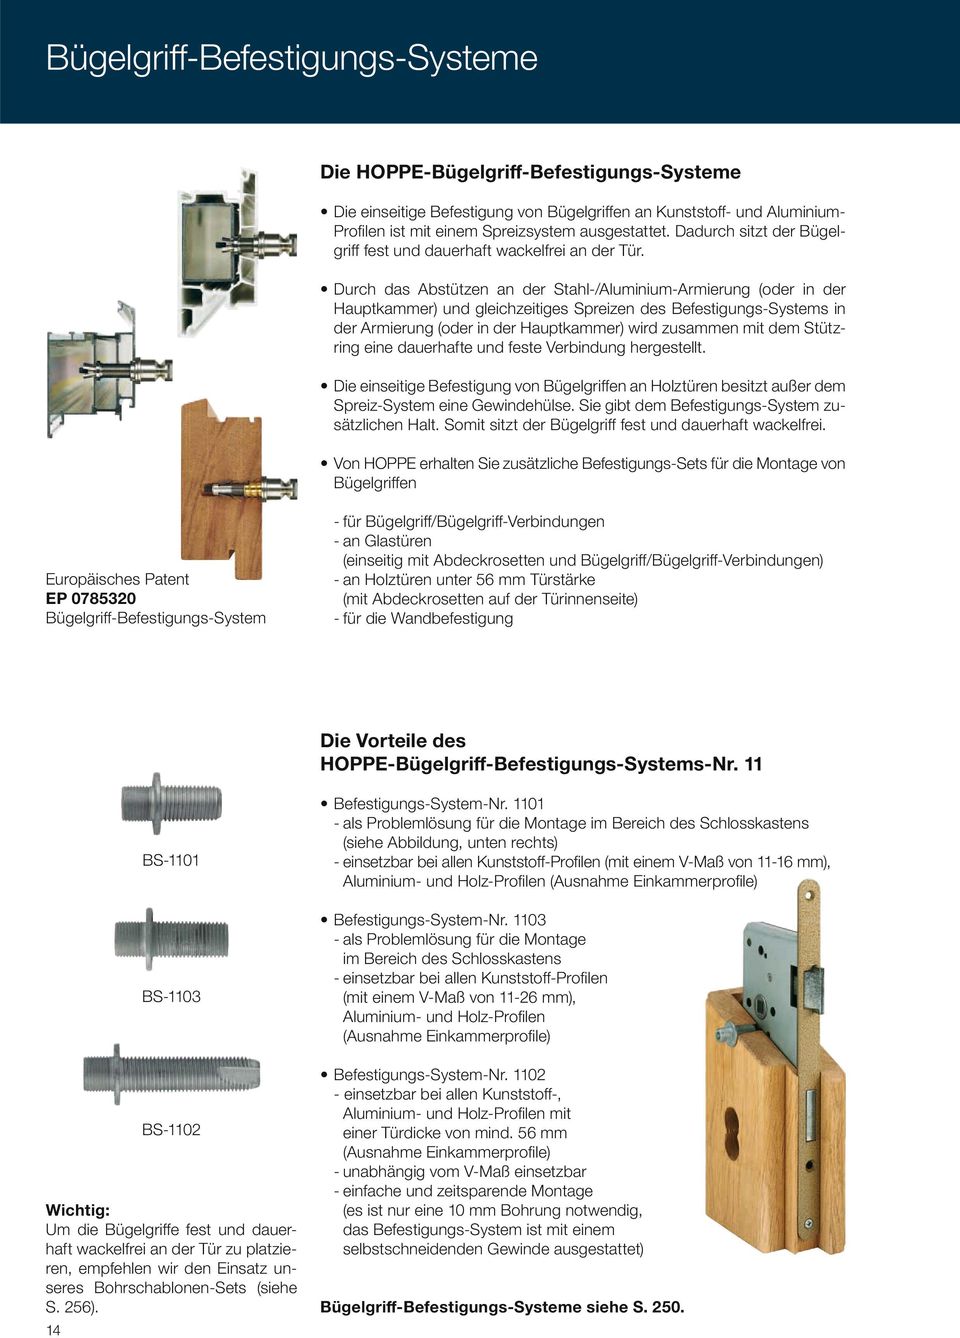 Bügelgriffen Europäisches Patent EP 0785320 - für Bügelgriff/Bügelgriff-Verbindungen - an Glastüren (einseitig mit Abdeckrosetten und Bügelgriff/Bügelgriff-Verbindungen) - an Holztüren unter 56 mm